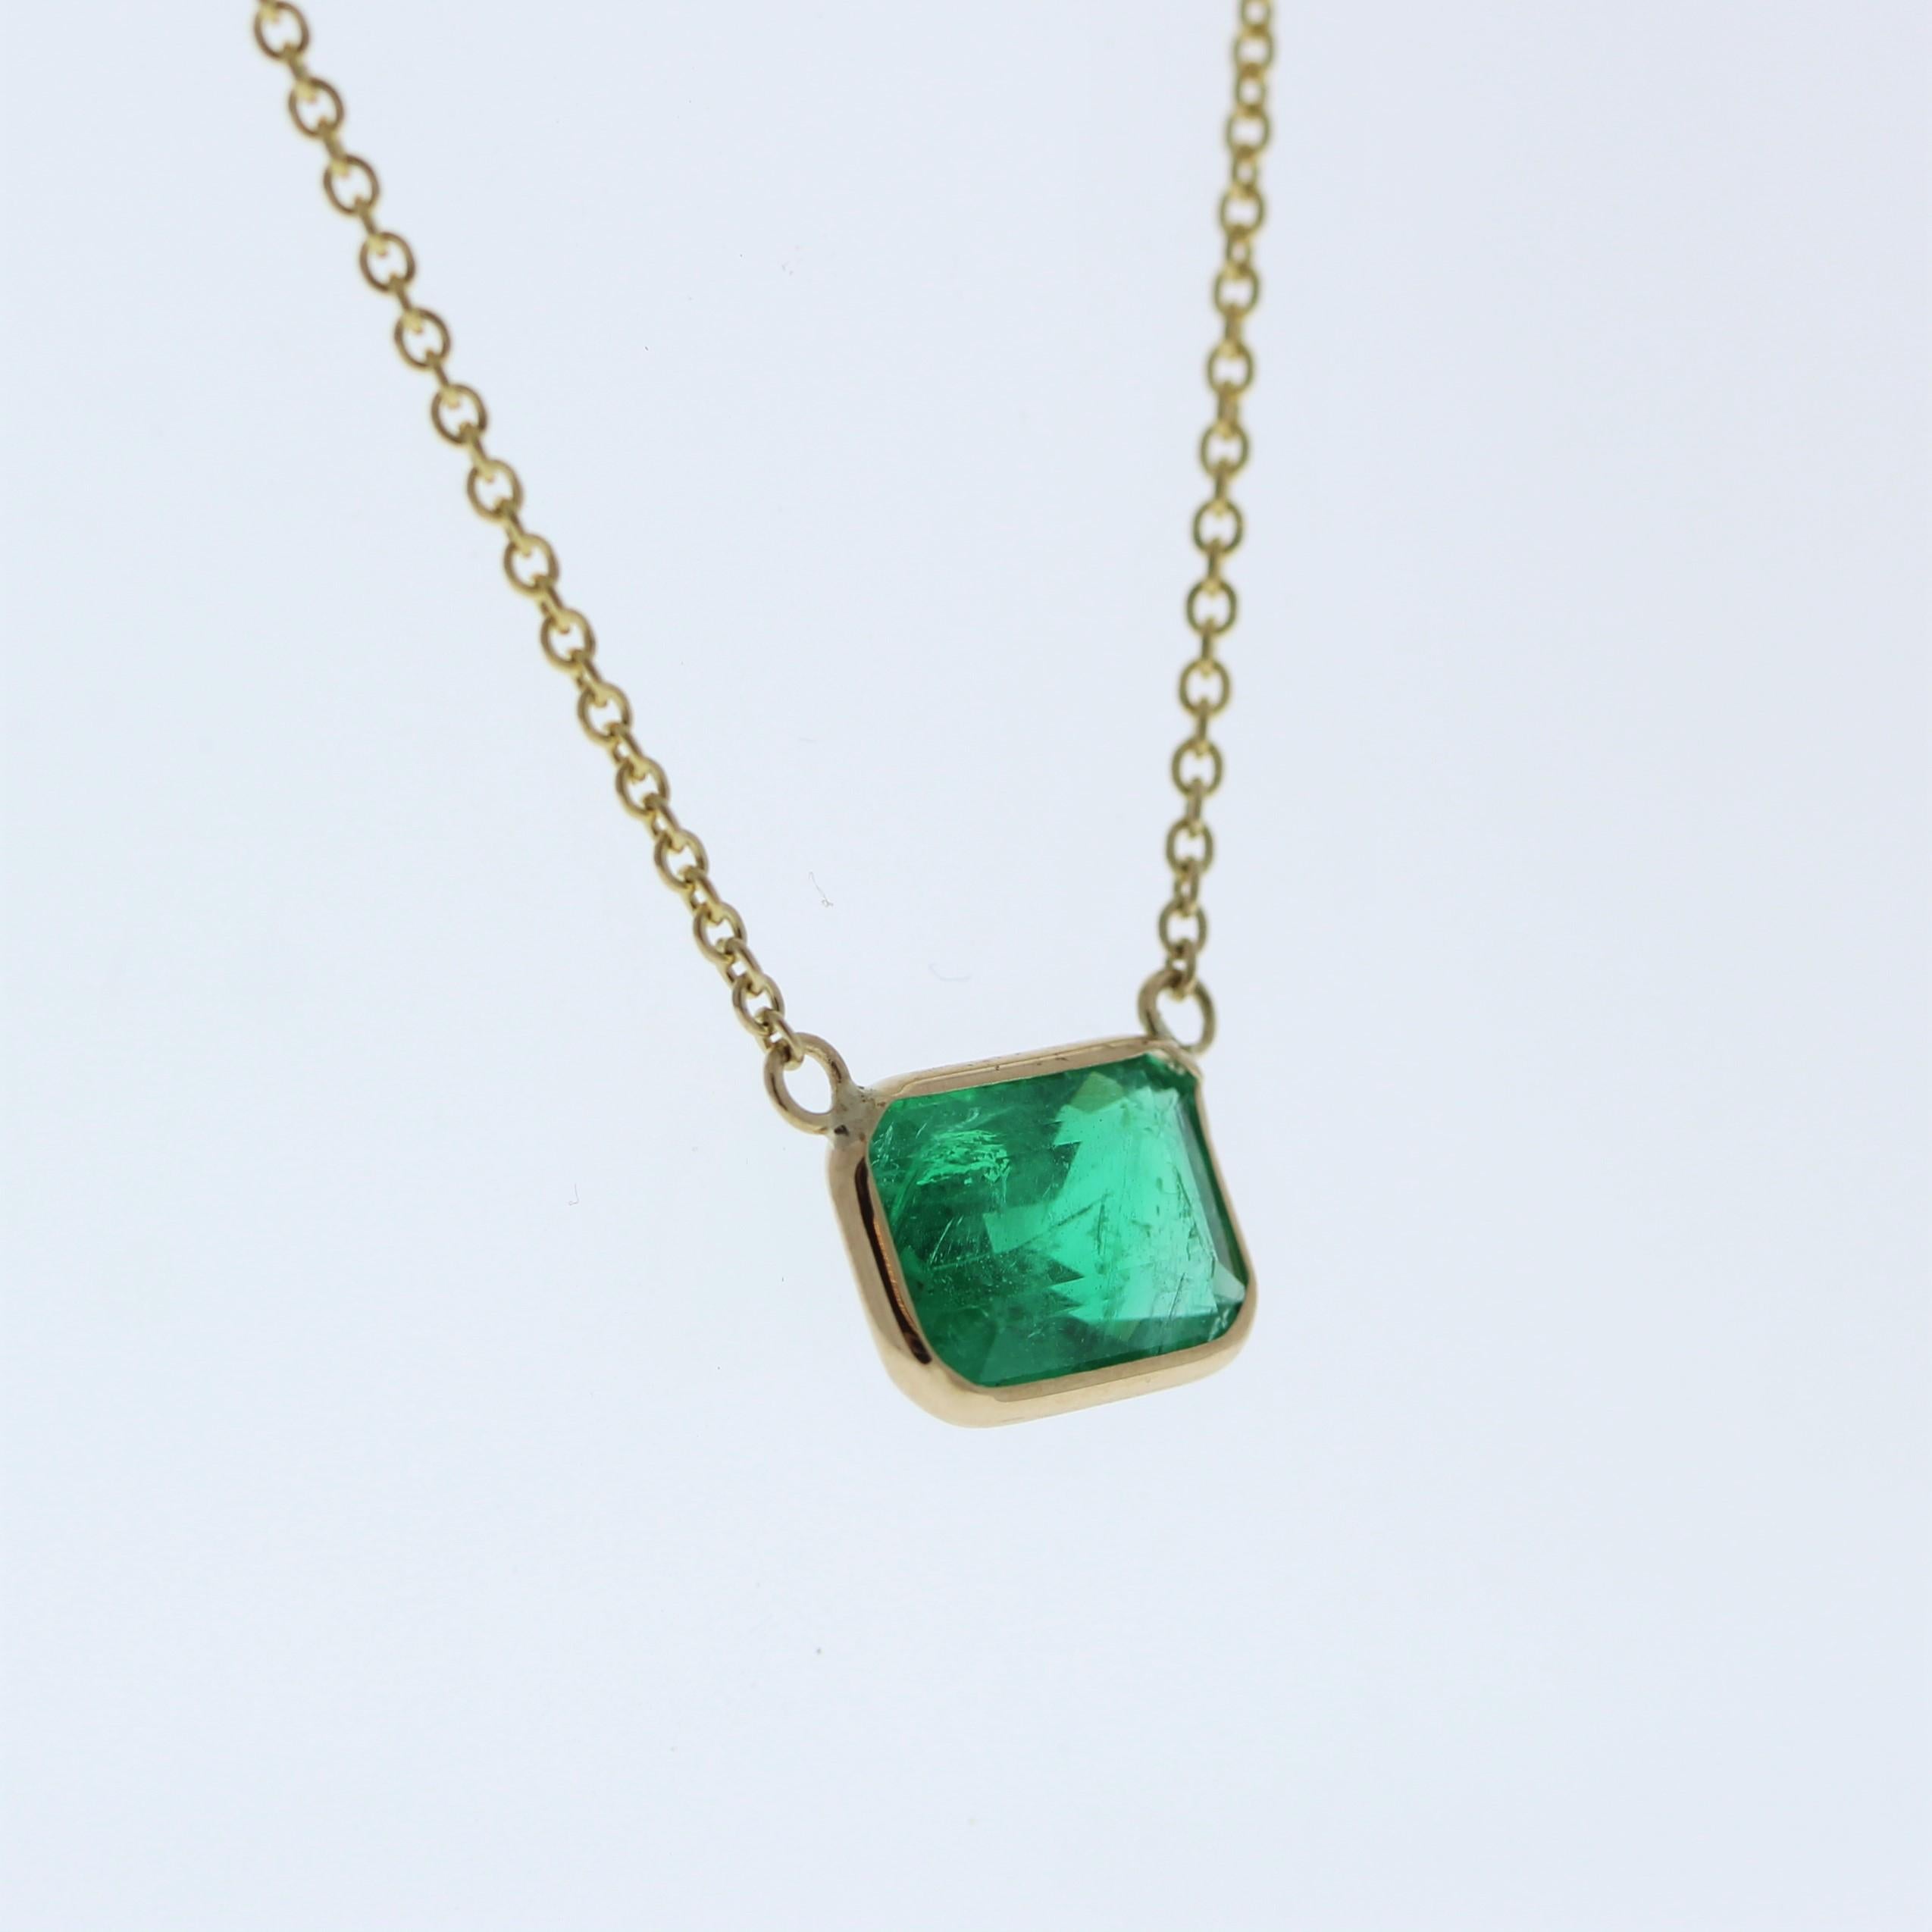 Die Halskette besteht aus einem Smaragd von 1,97 Karat im Smaragdschliff, der in einem Anhänger oder einer Fassung aus 14 Karat Gelbgold gefasst ist. Der Smaragdschliff und die sattgrüne Farbe des Smaragds in der Gelbgoldfassung machen ihn zu einem